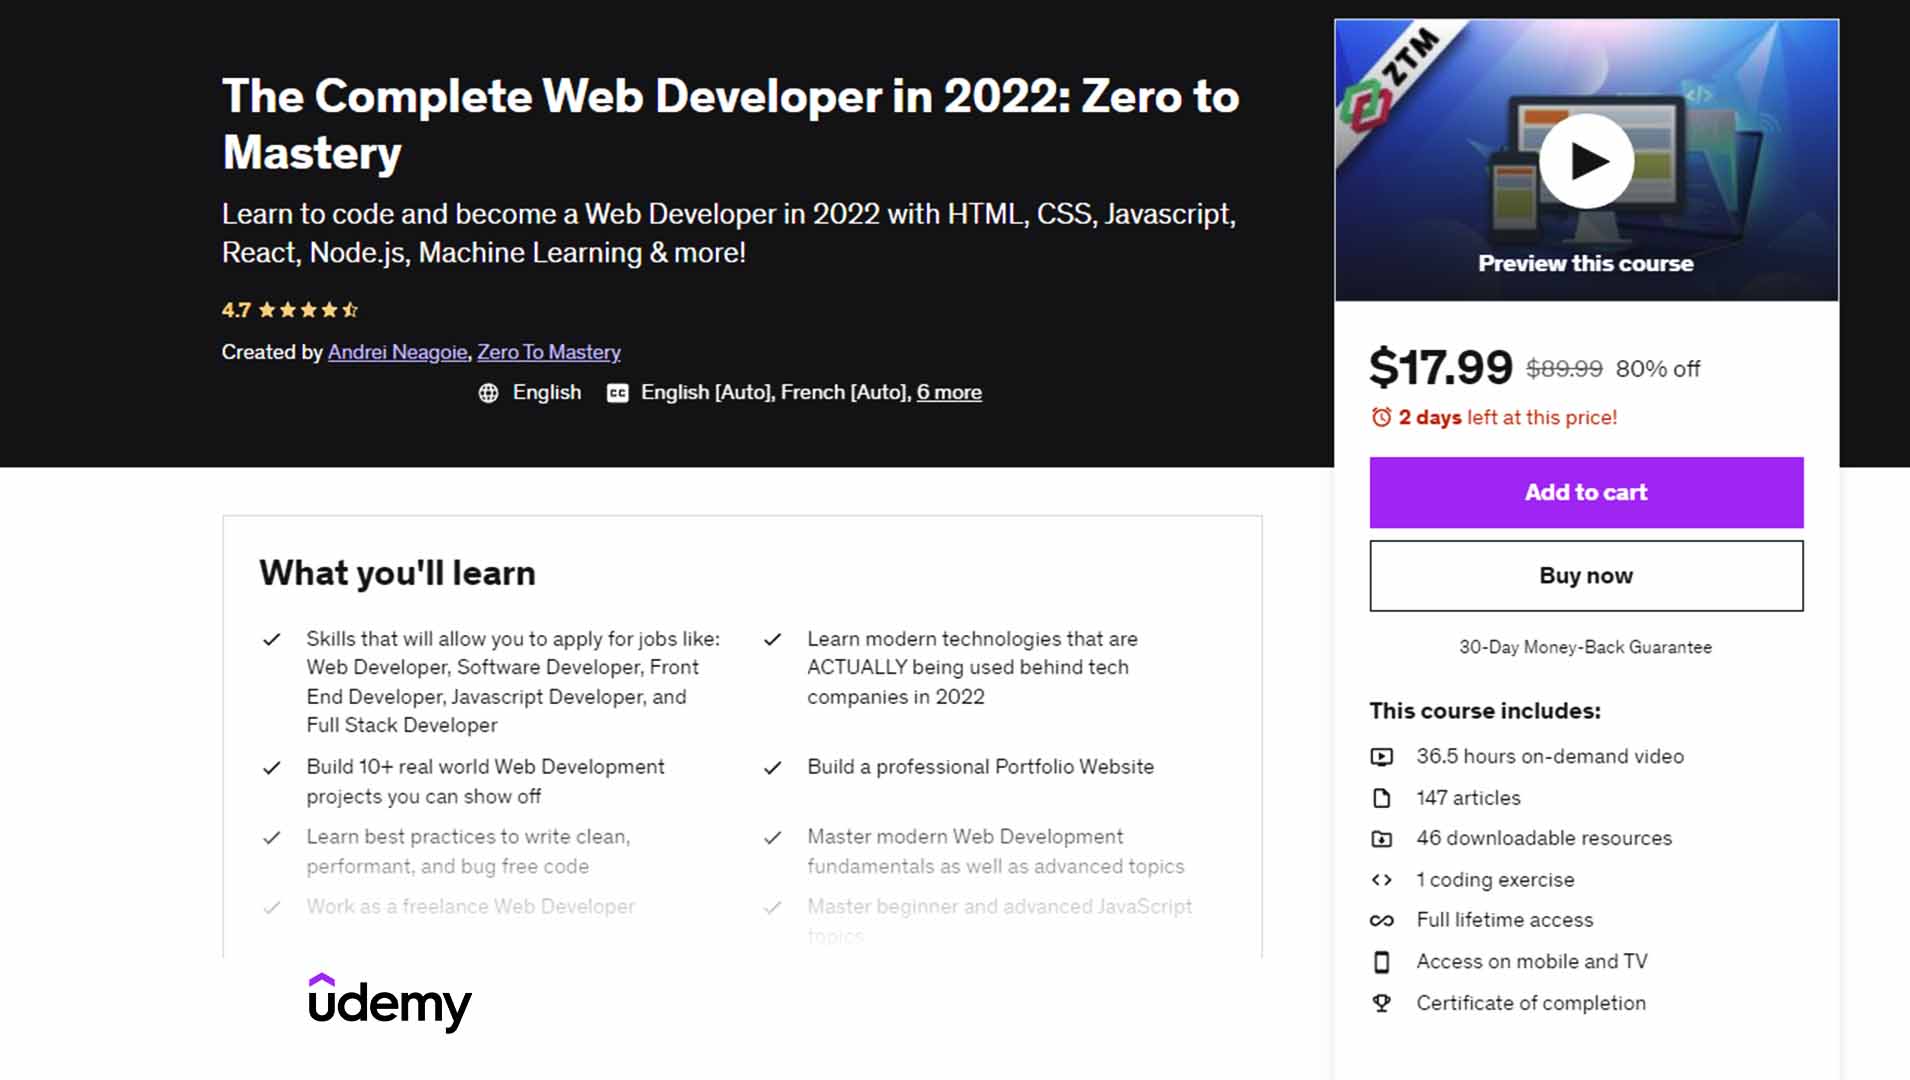 The Complete Web Developer: Zero to Mastery